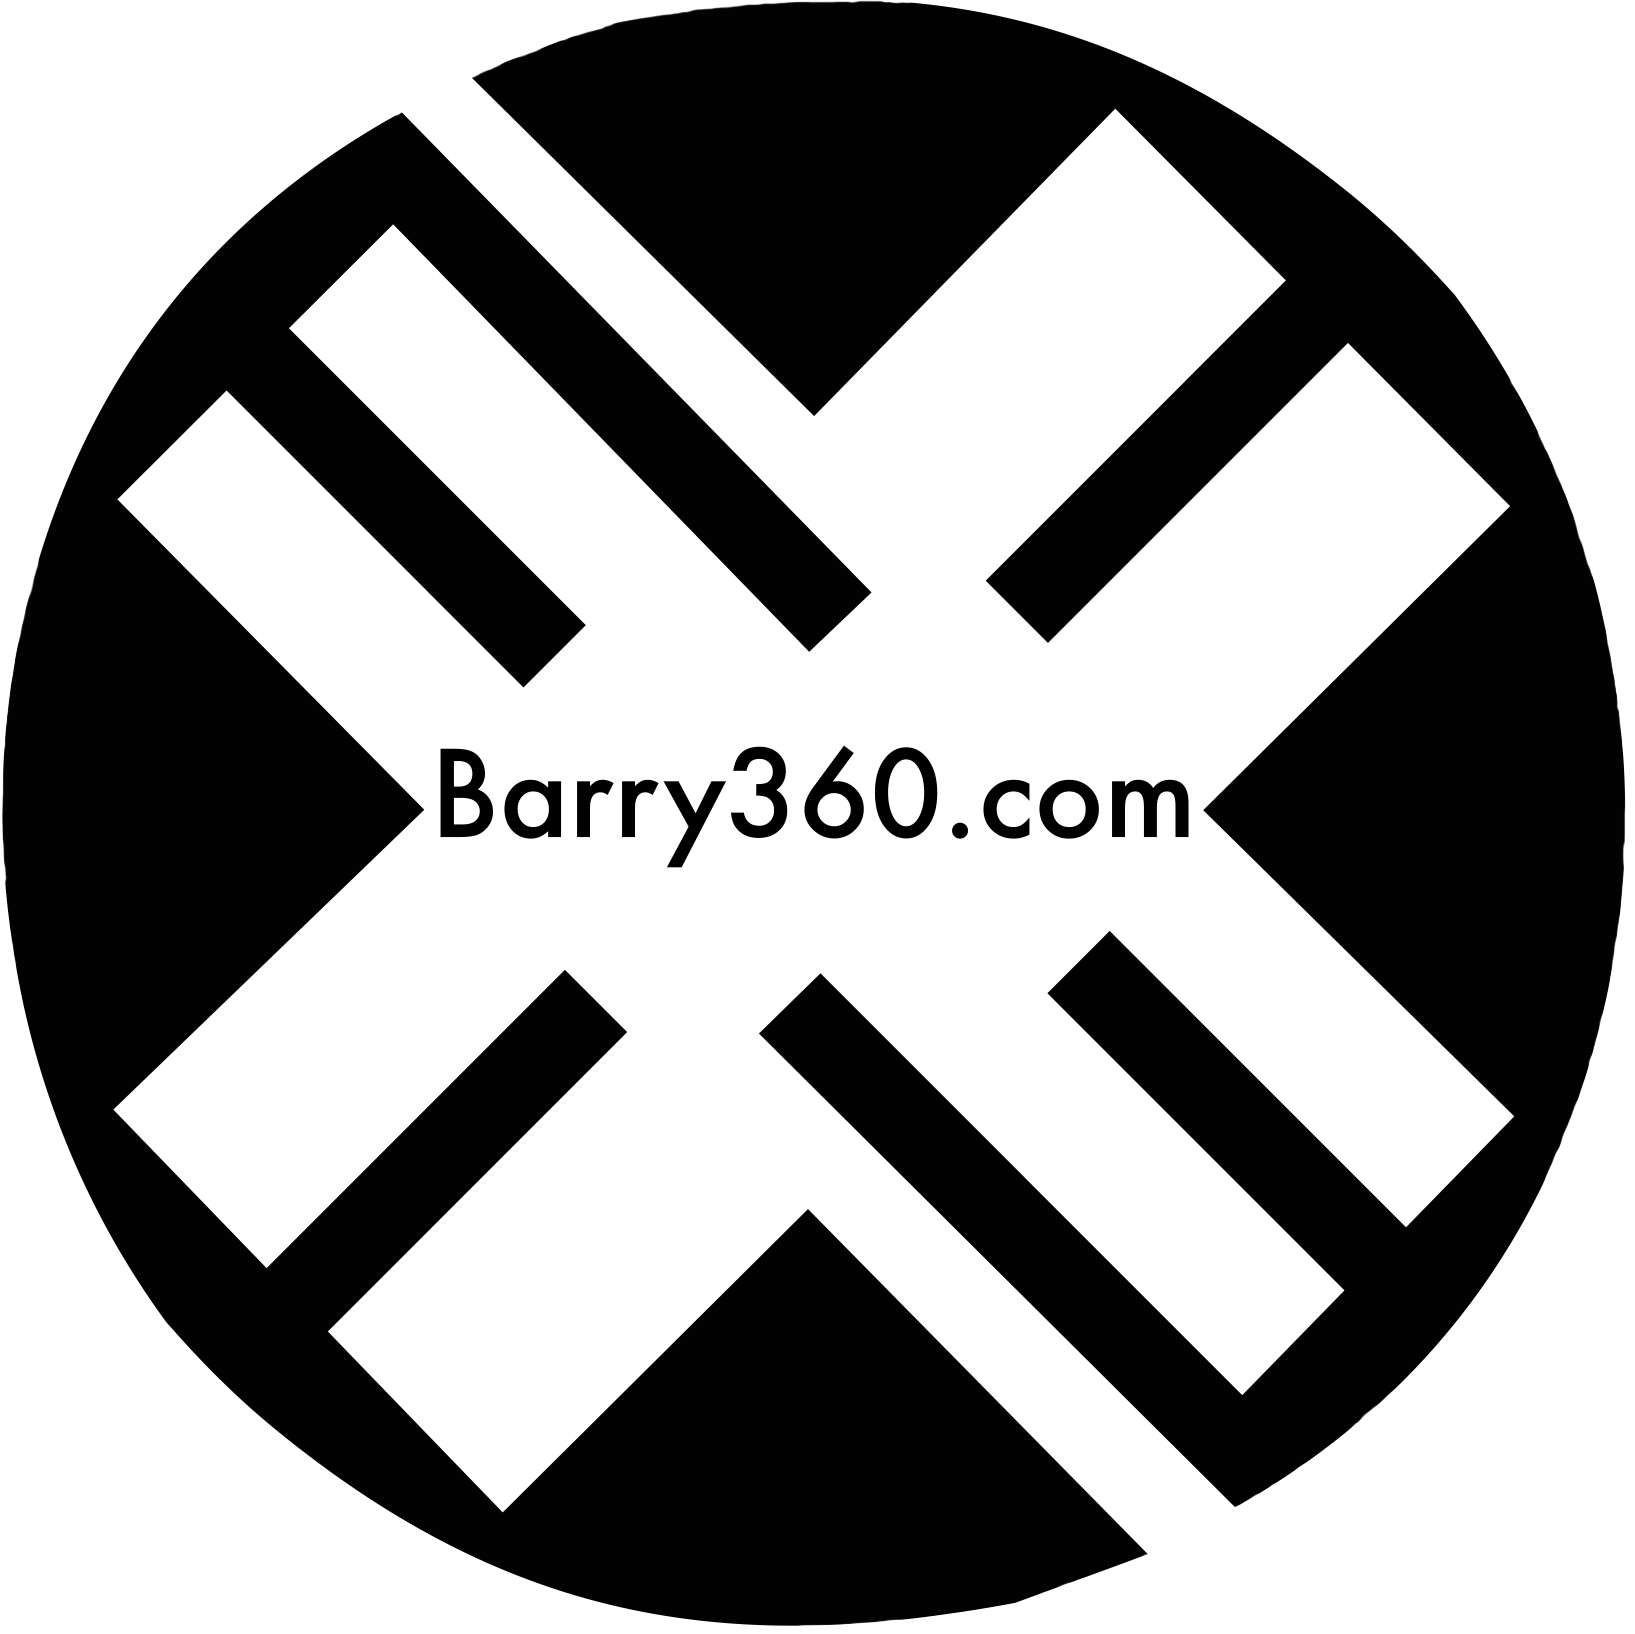 Barry360.com